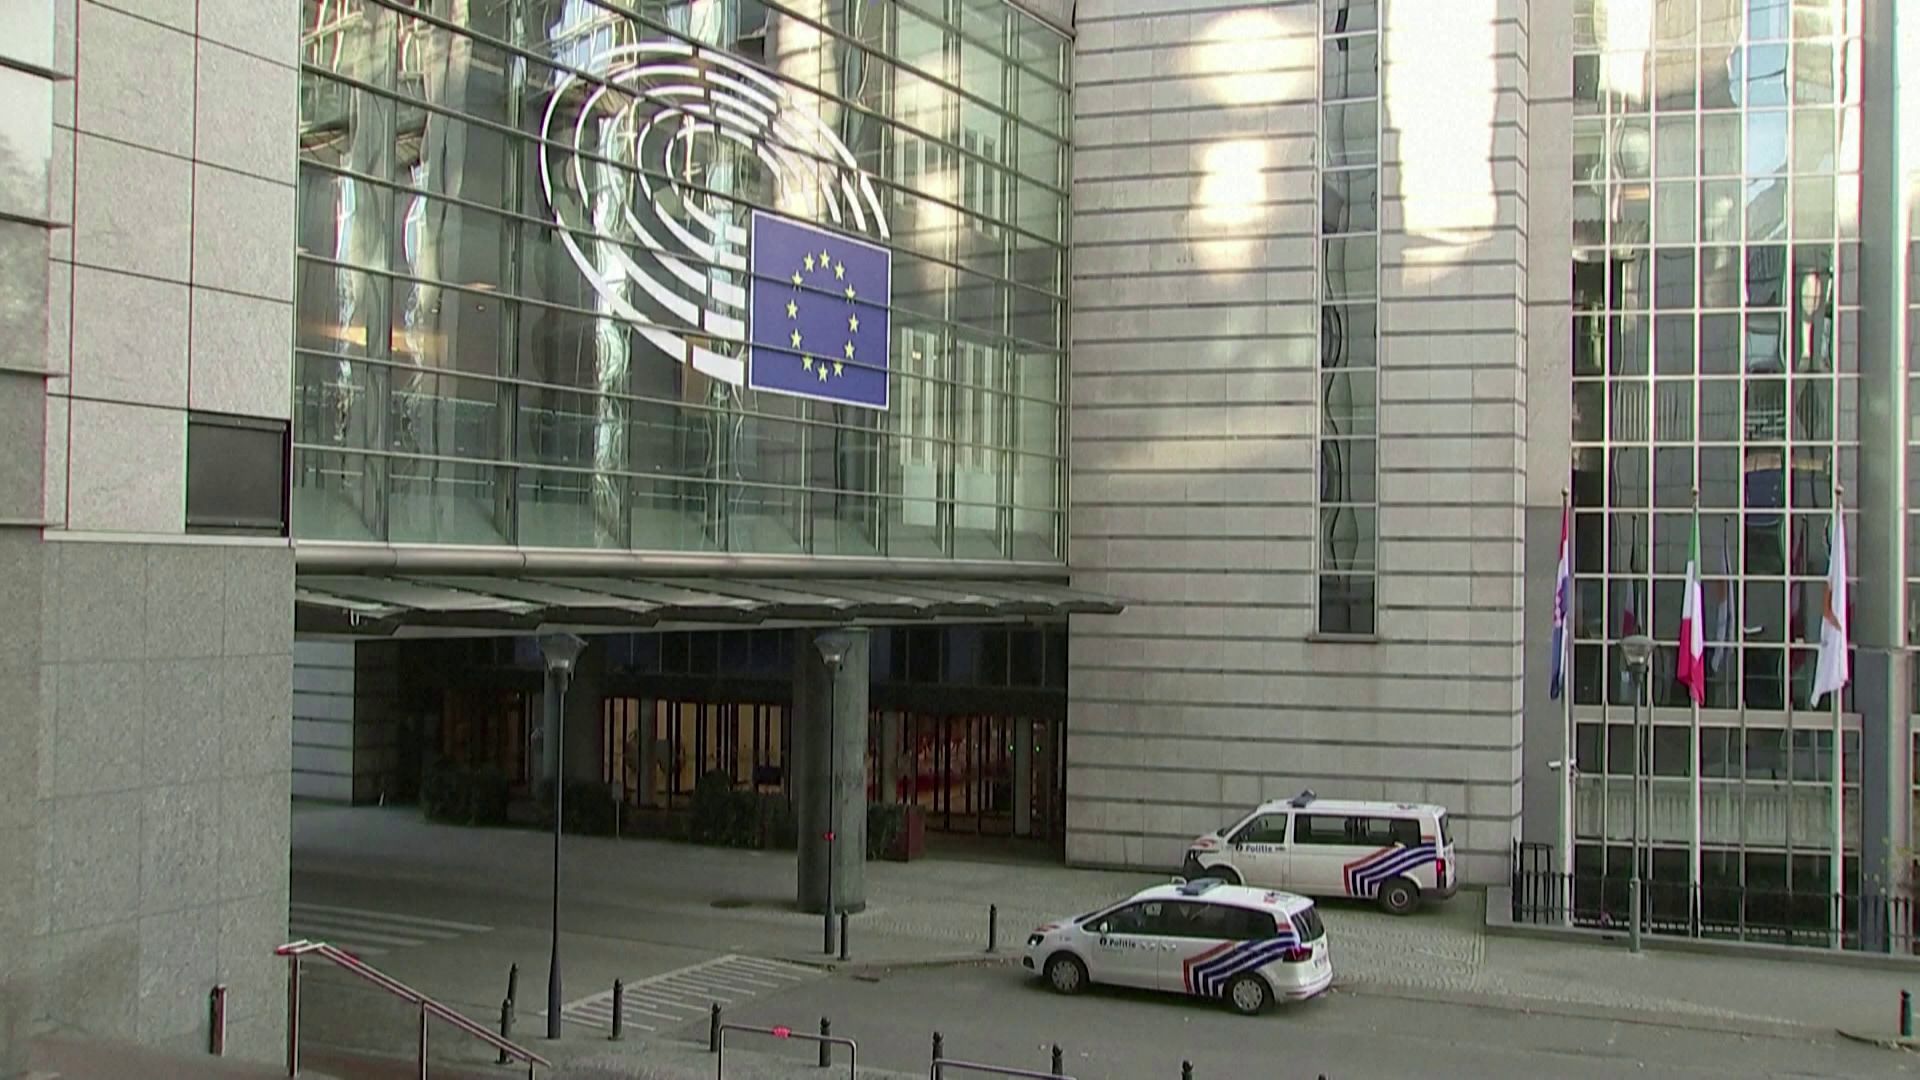 Újabb két EP-képviselő körül vizsgálódnak a brüsszeli korrupciós botrány miatt